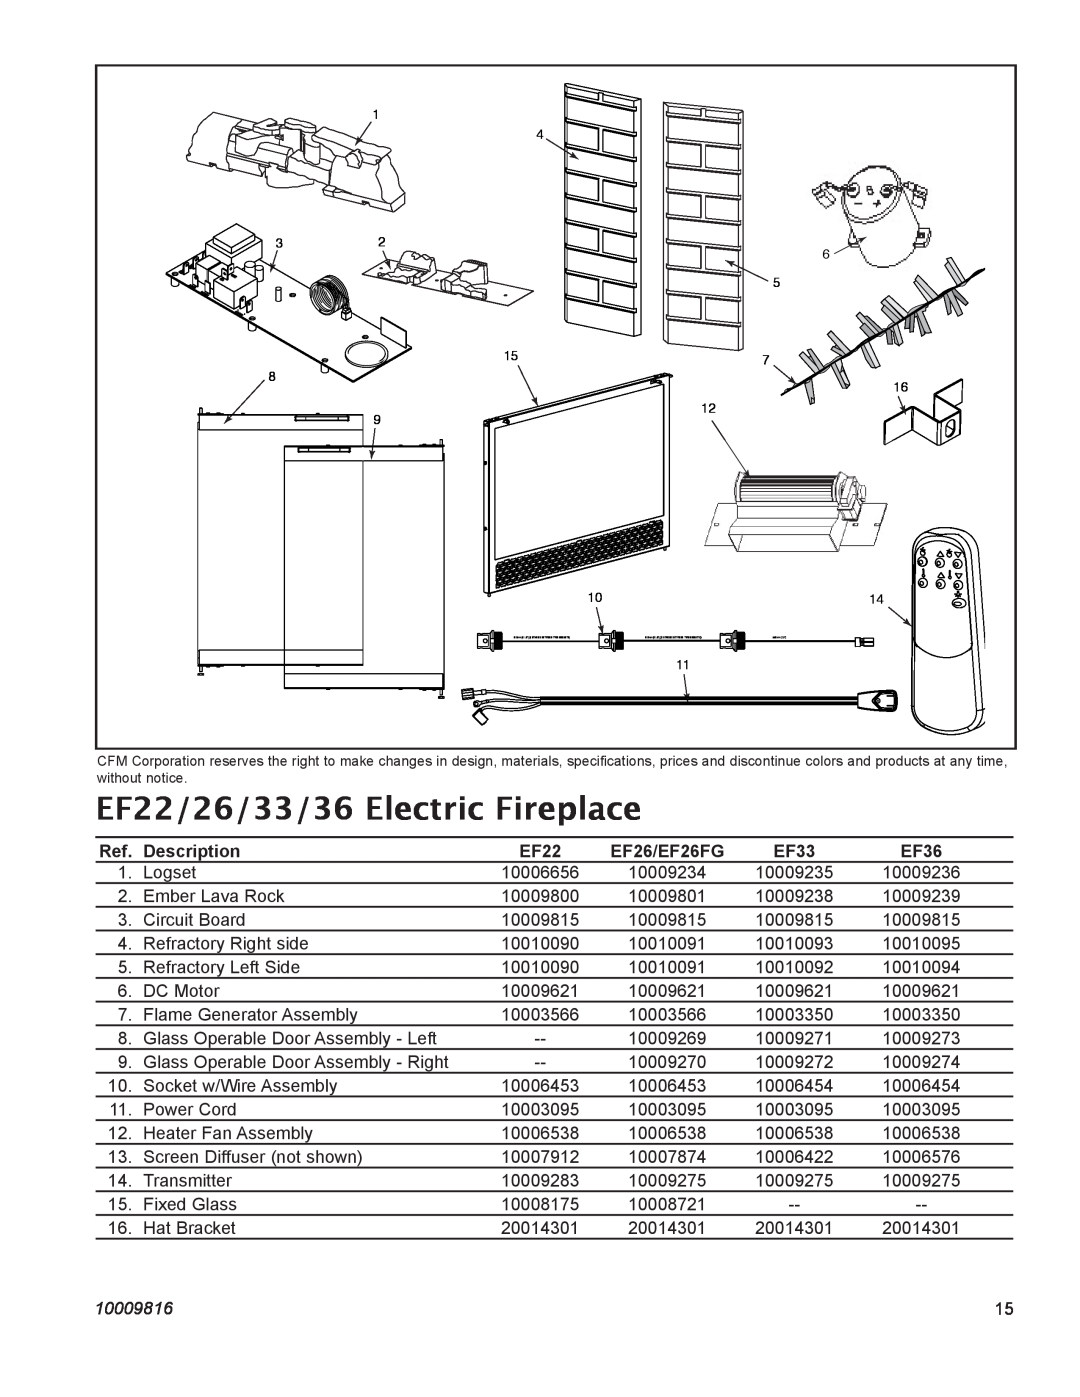 Vermont Casting operating instructions EF22/26/33/36 Electric Fireplace, Description, EF26/EF26FG, EF33, EF36, 10009816 